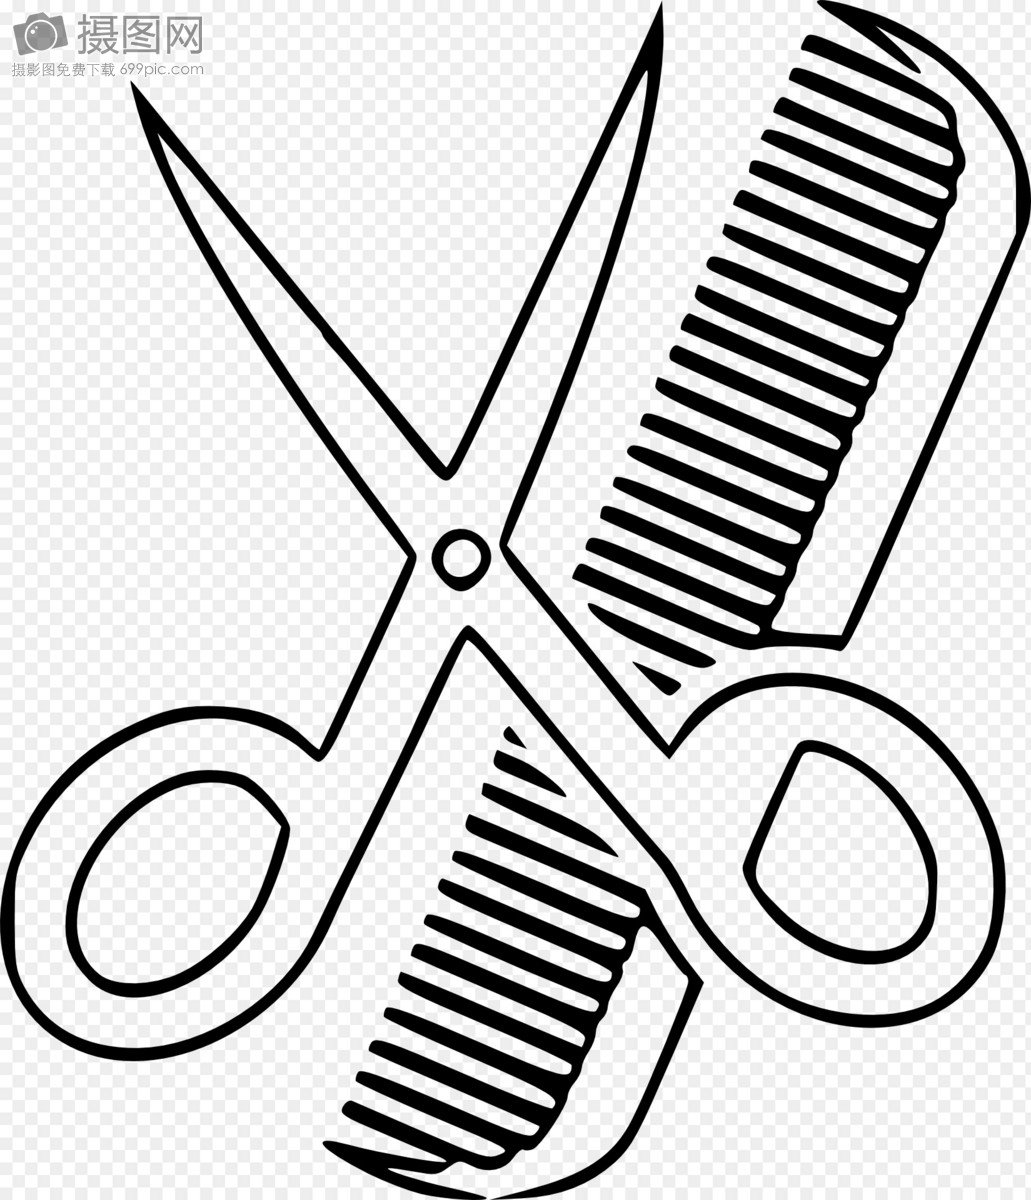 用刀、剪剪头发的理发师平面广告素材免费下载(图片编号:2020913)-六图网